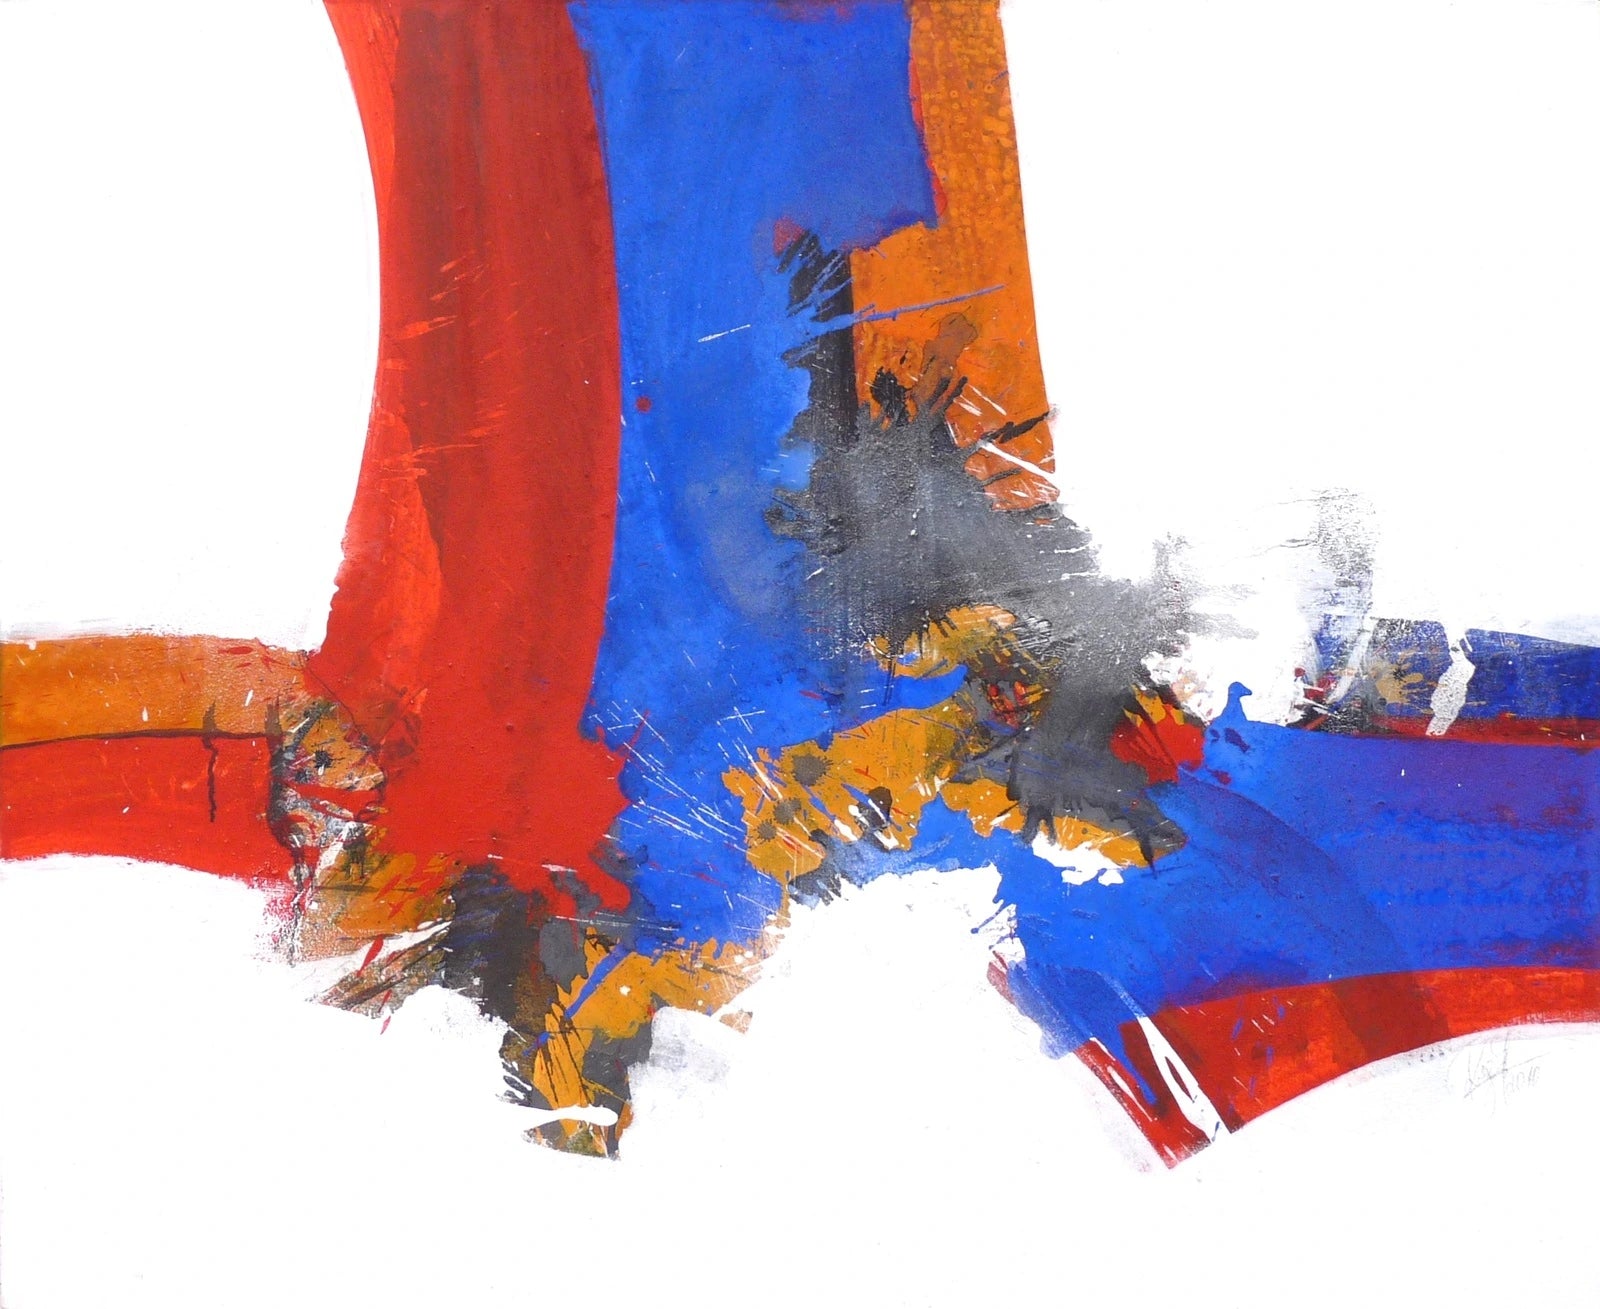 Roger Greßl "Colour composition in blue red"